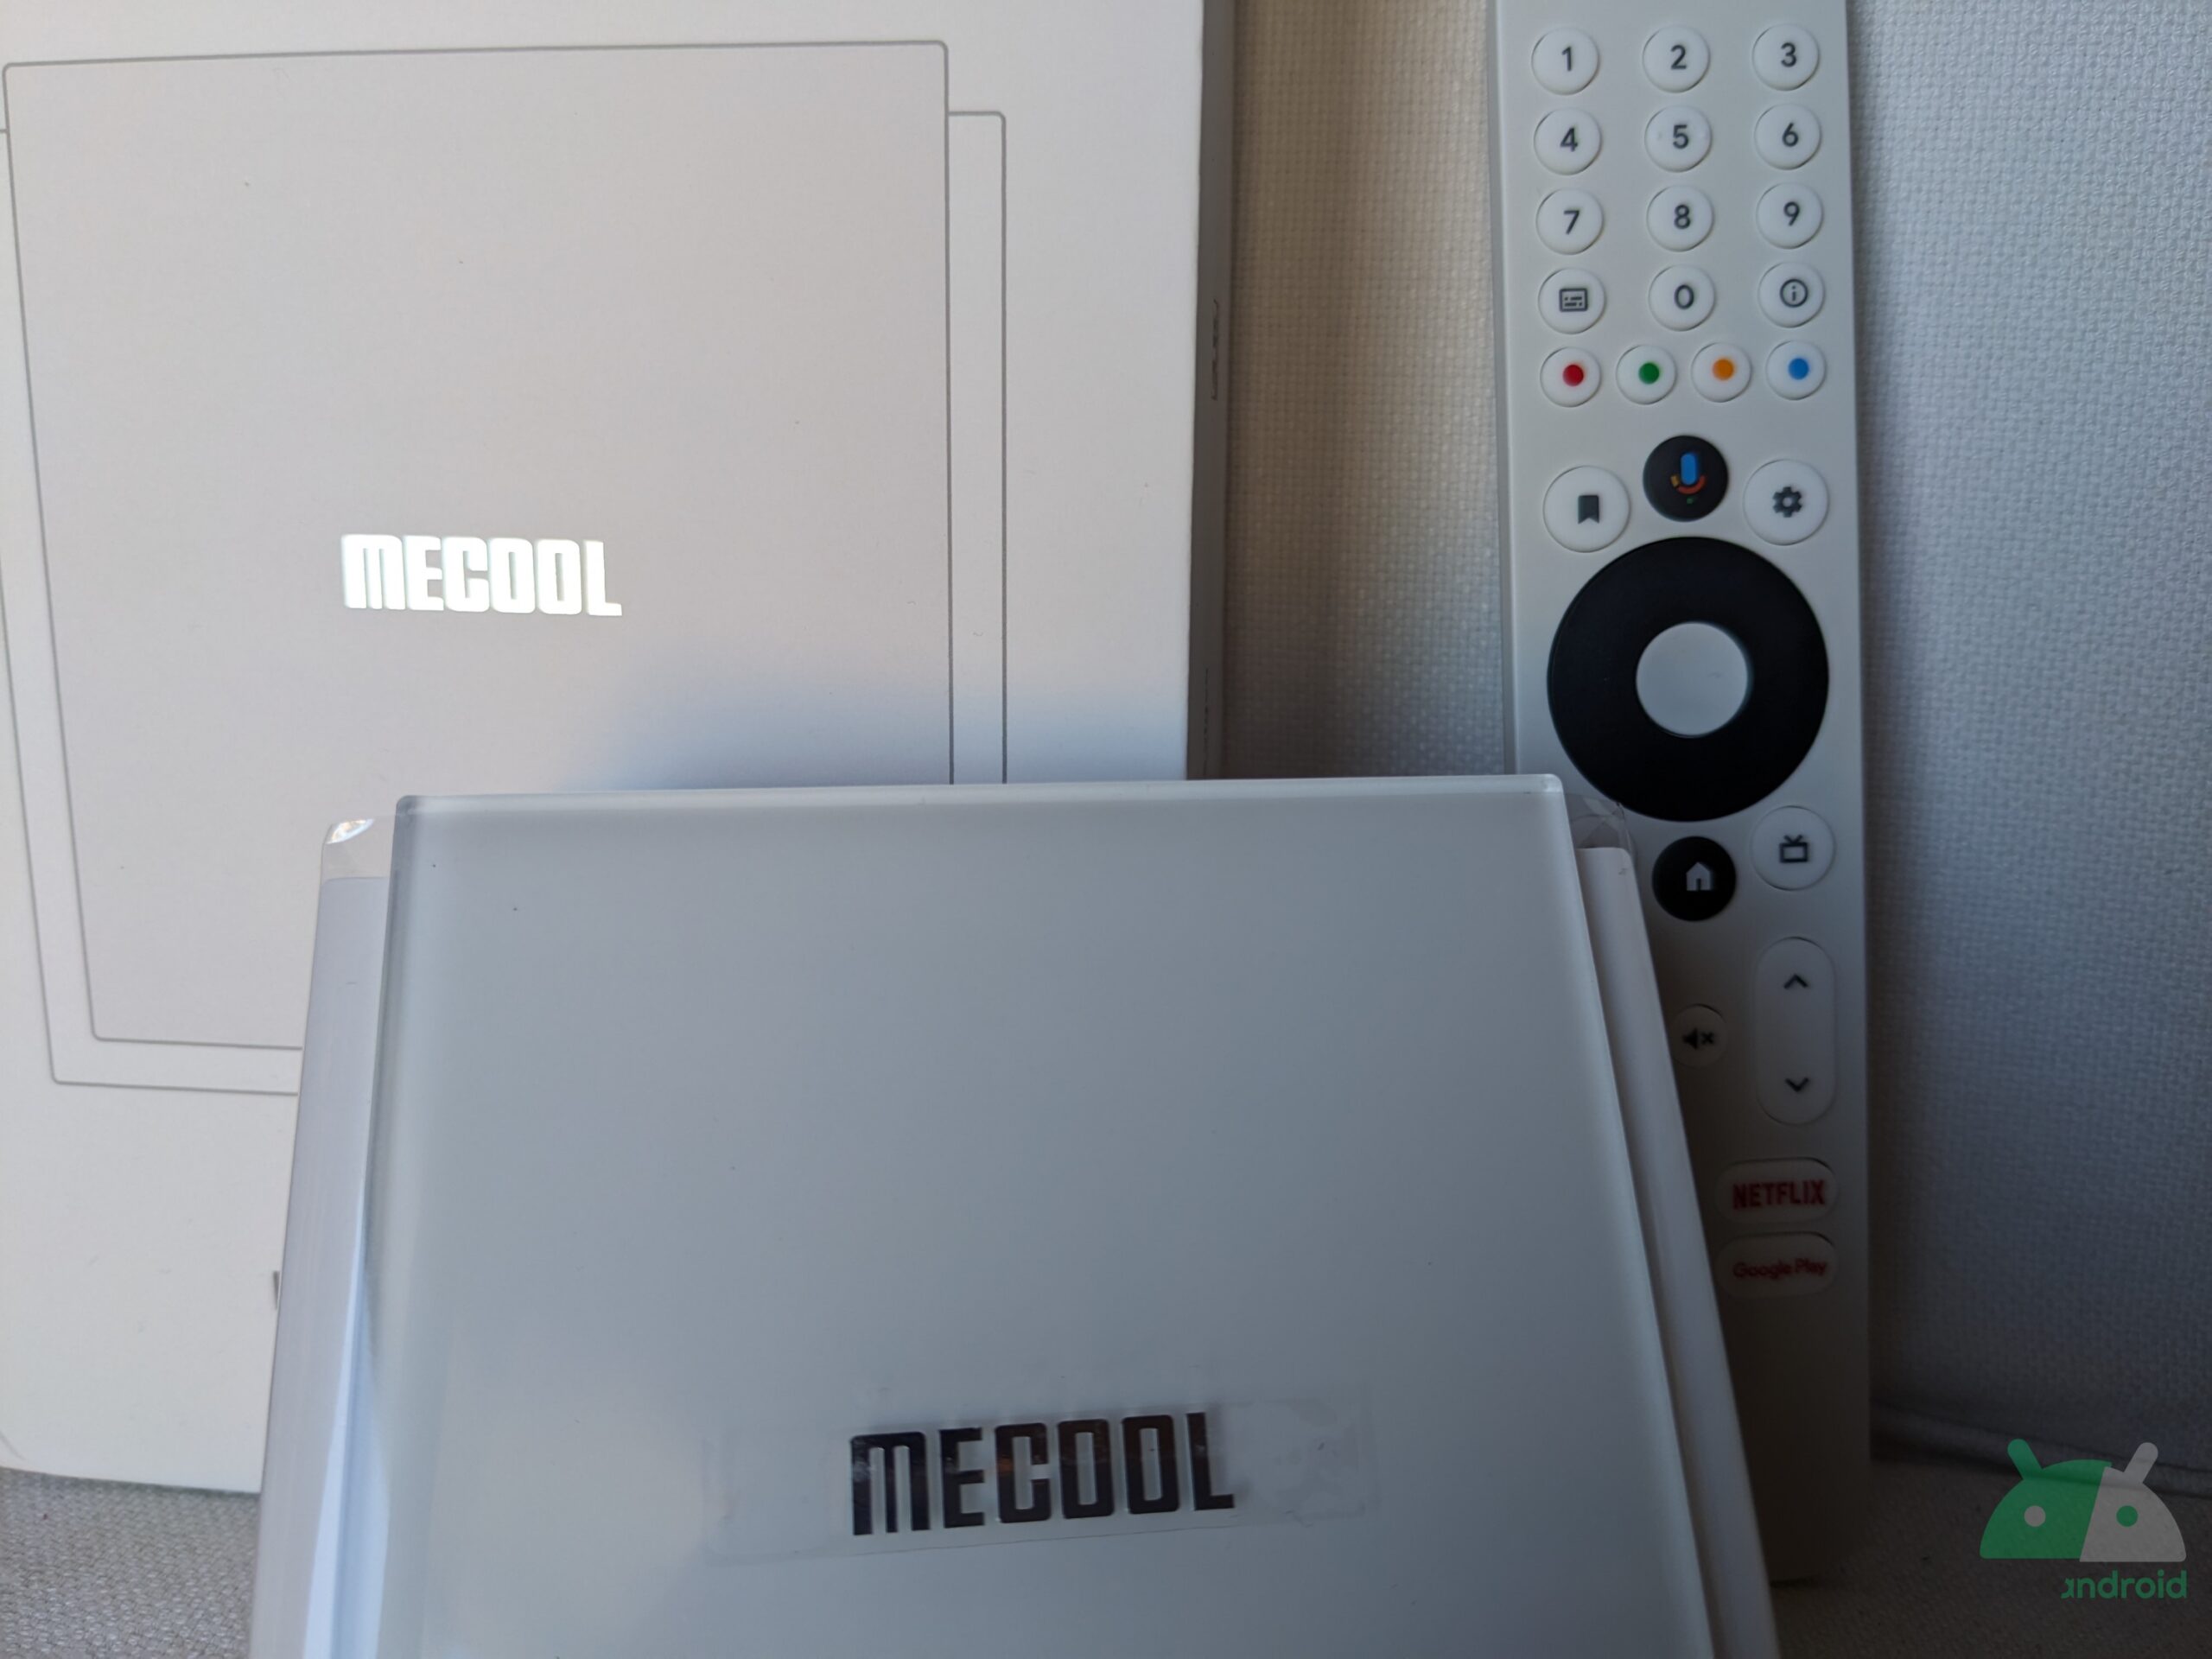 Recensione Mecool KM2 Plus Deluxe: un ottimo box con Android TV